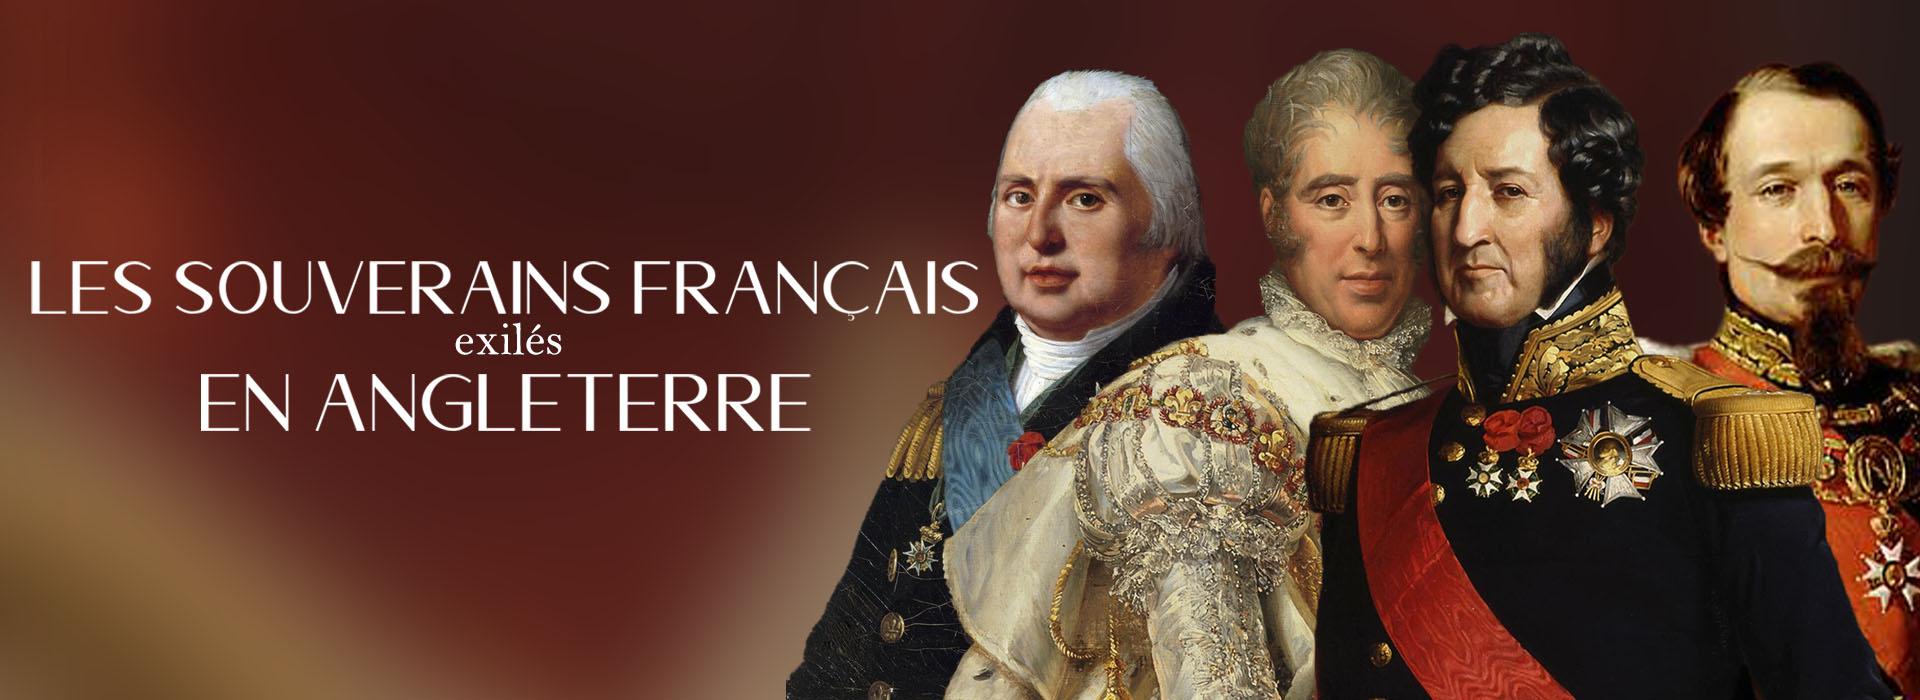 Monarchie francaise en exil en angleterre